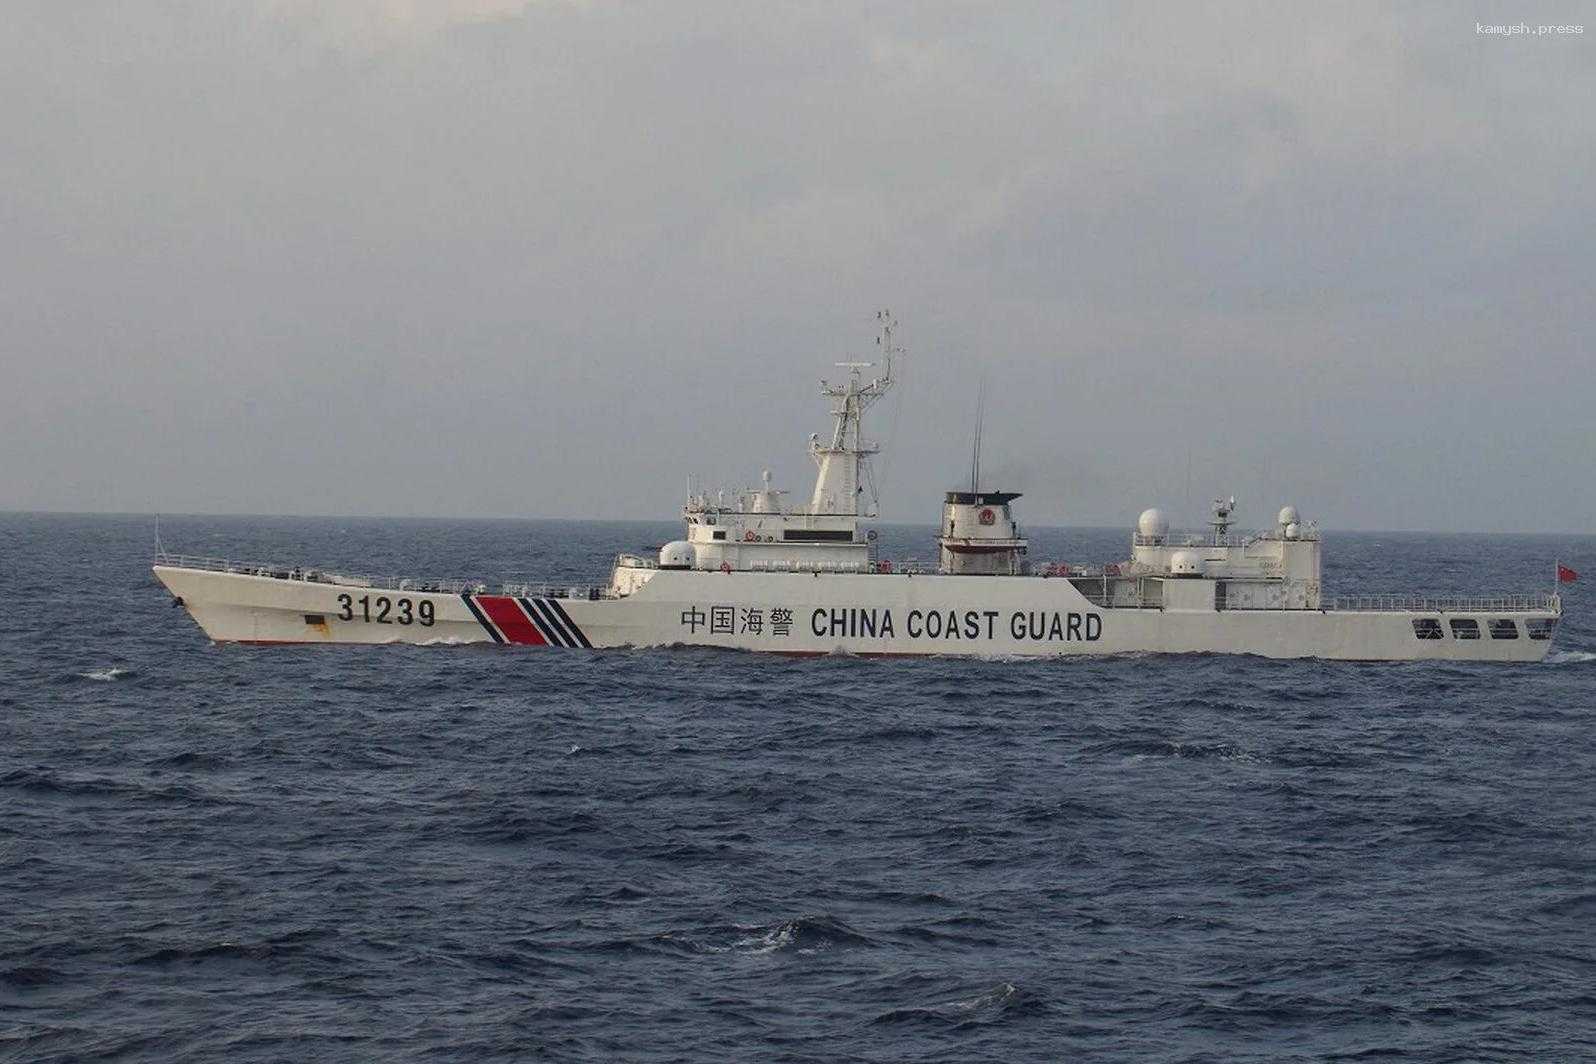 Катер береговой охраны КНР столкнулся с надувной лодкой филиппинских ВМС в ЮКМ